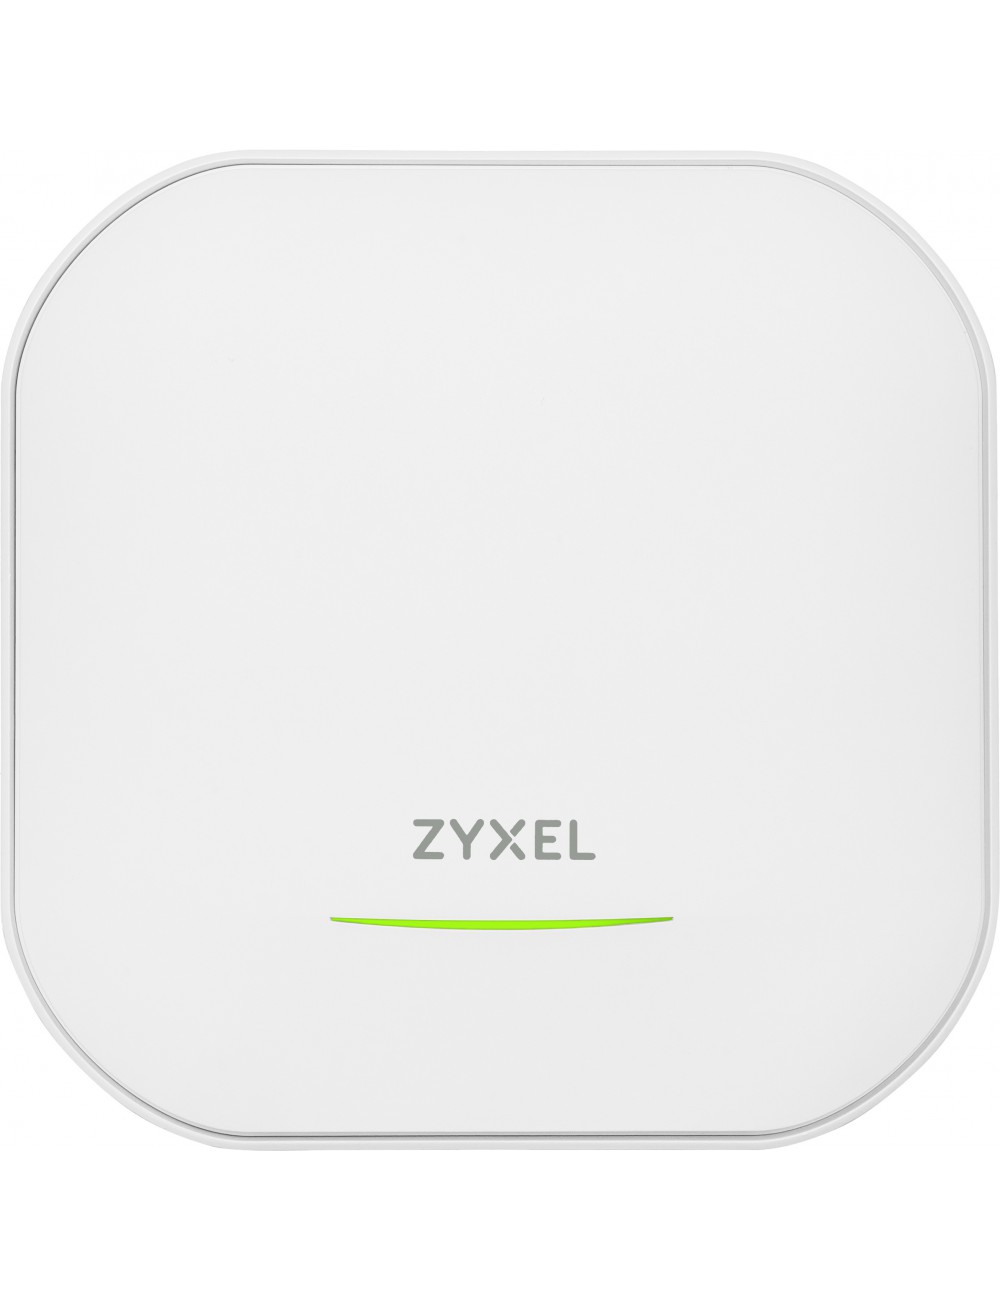 Zyxel WAX620D-6E-EU0101F punto de acceso inalámbrico 4800 Mbit s Blanco Energía sobre Ethernet (PoE)